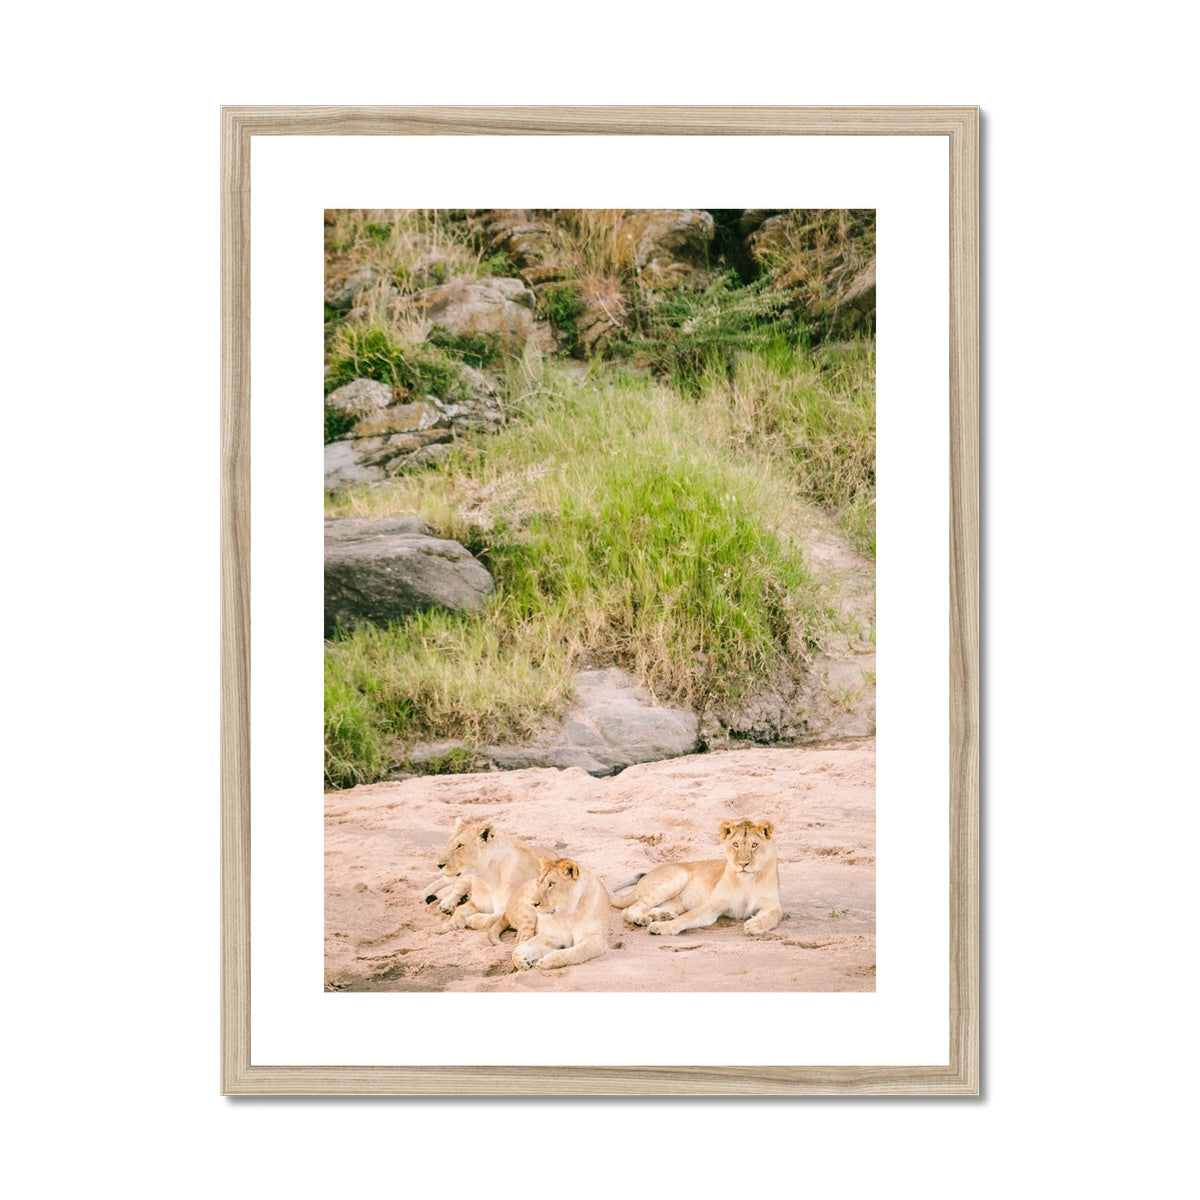 LION PRIDE Framed & Mounted Print